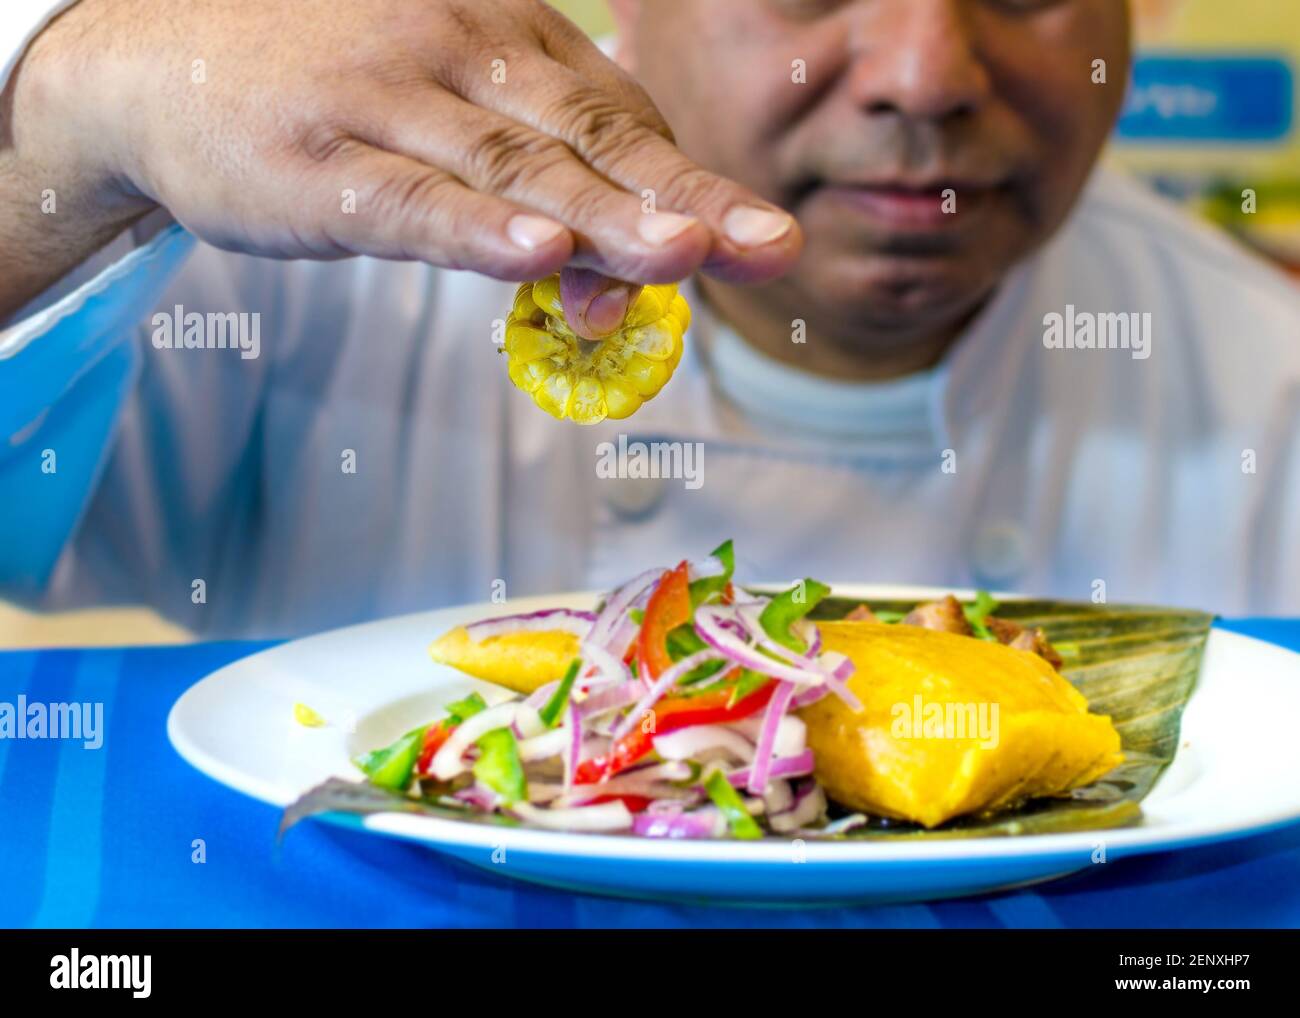 Kubanische Küche: tamal oder Tamales. Der Küchenchef stellt die traditionelle kubanische Mahlzeit auf einem Teller mit blauer Tischdecke dar Stockfoto